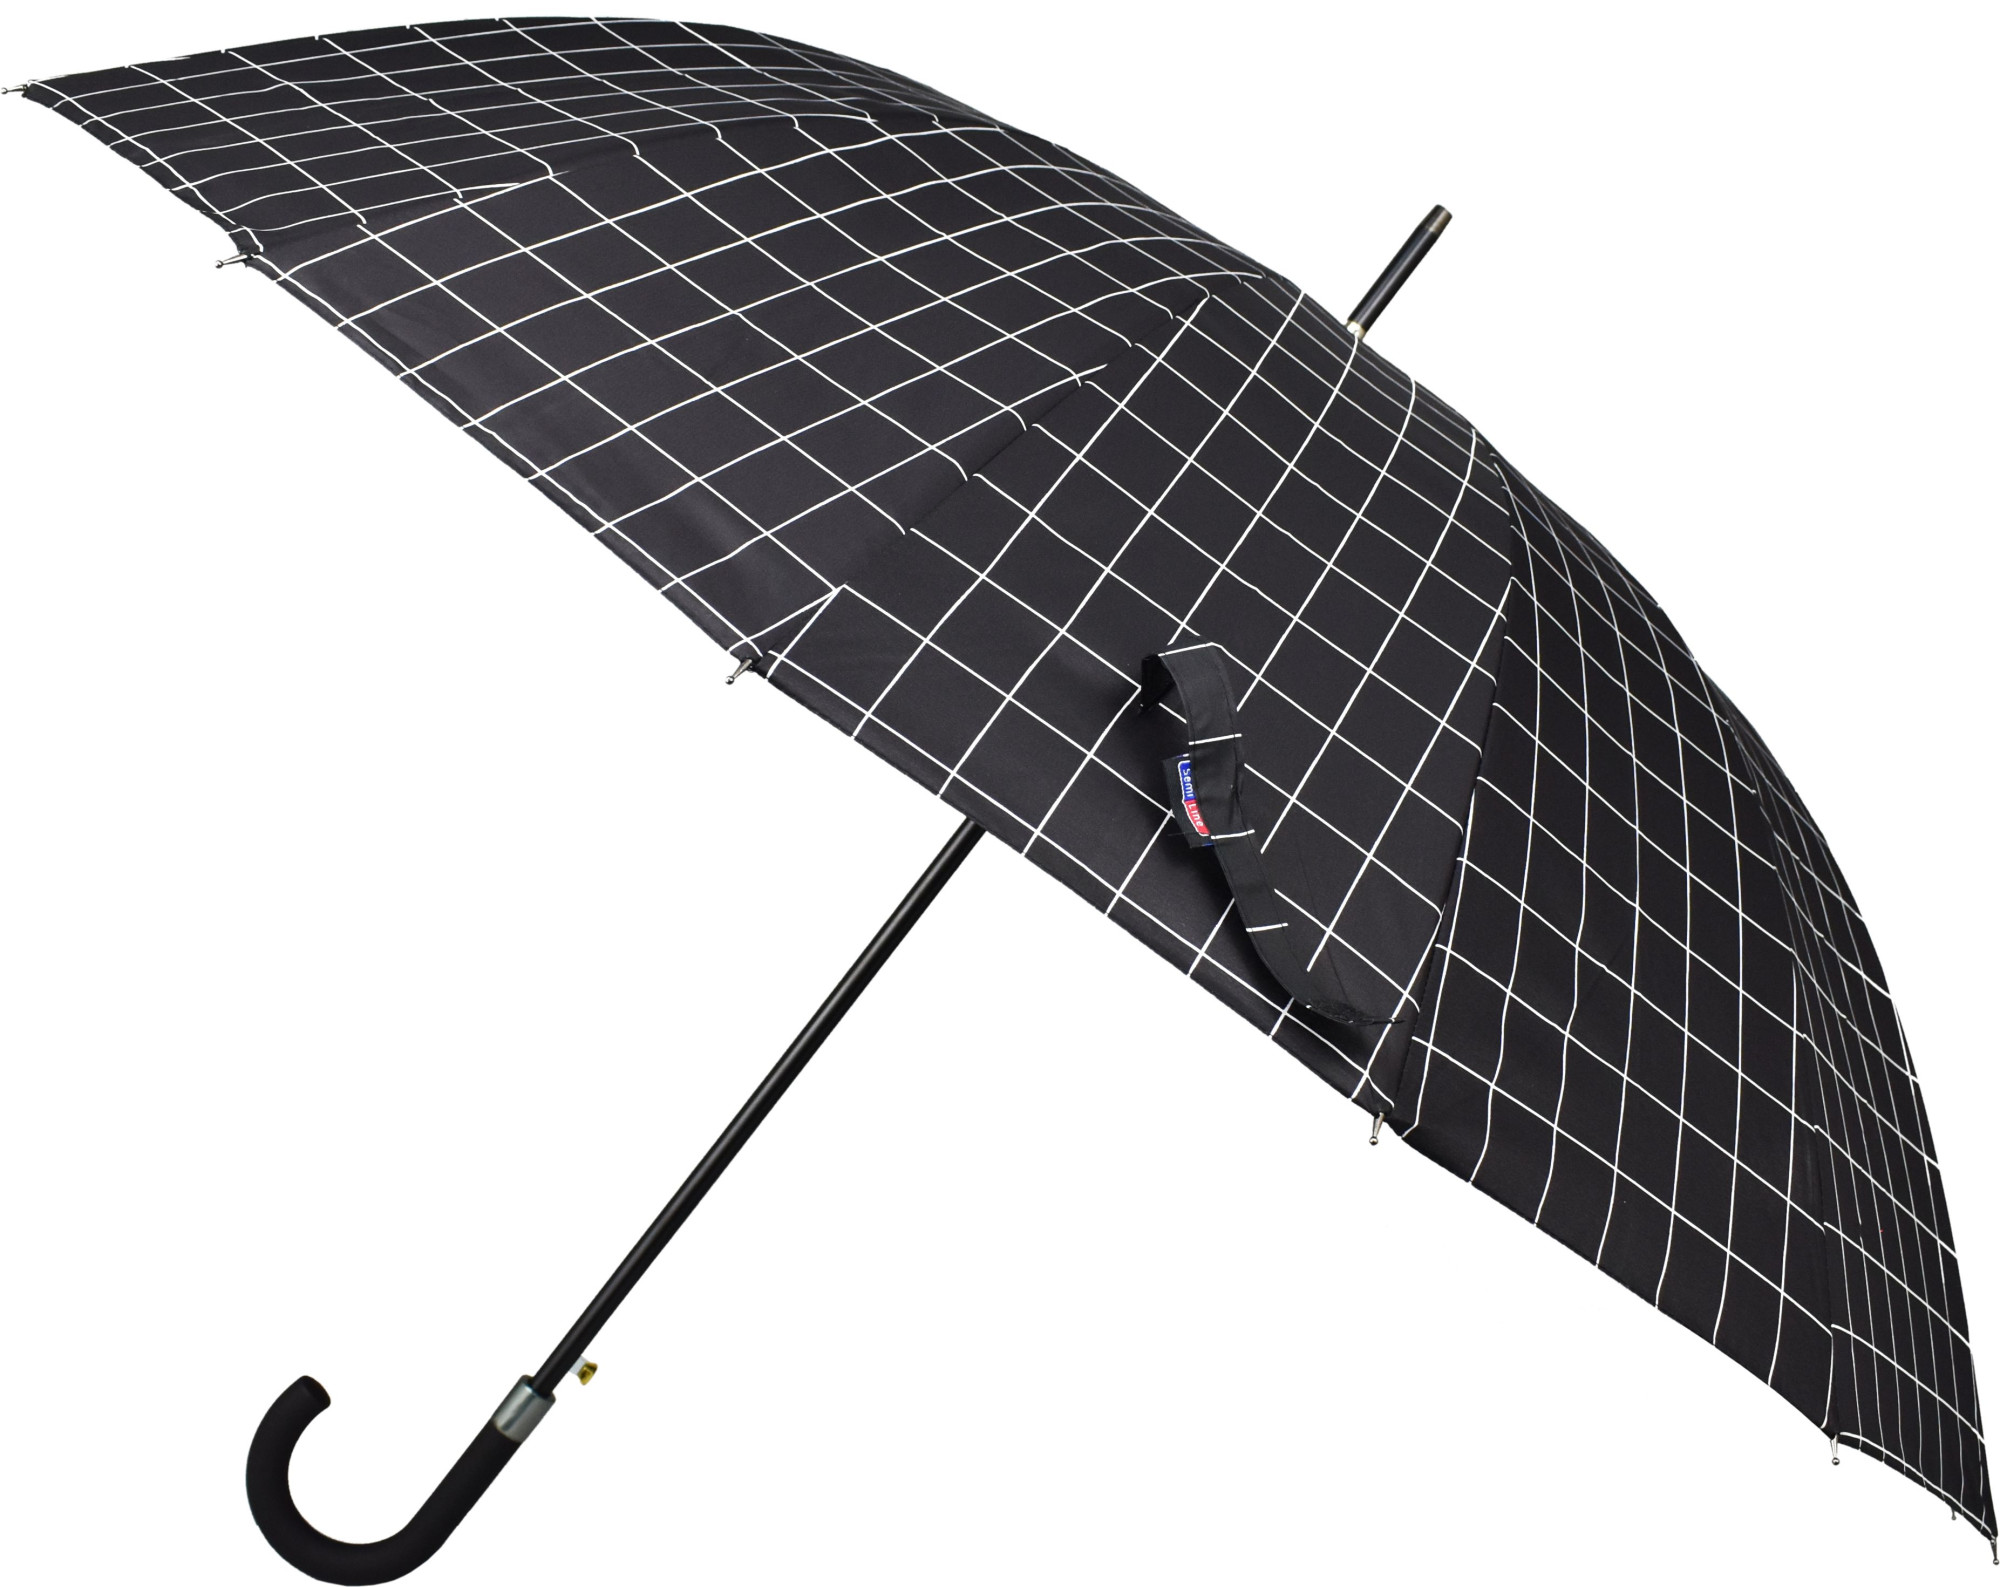 Dlouhý automaticky otevíraný deštník Semiline 2512-2 Black Průměr116 cm